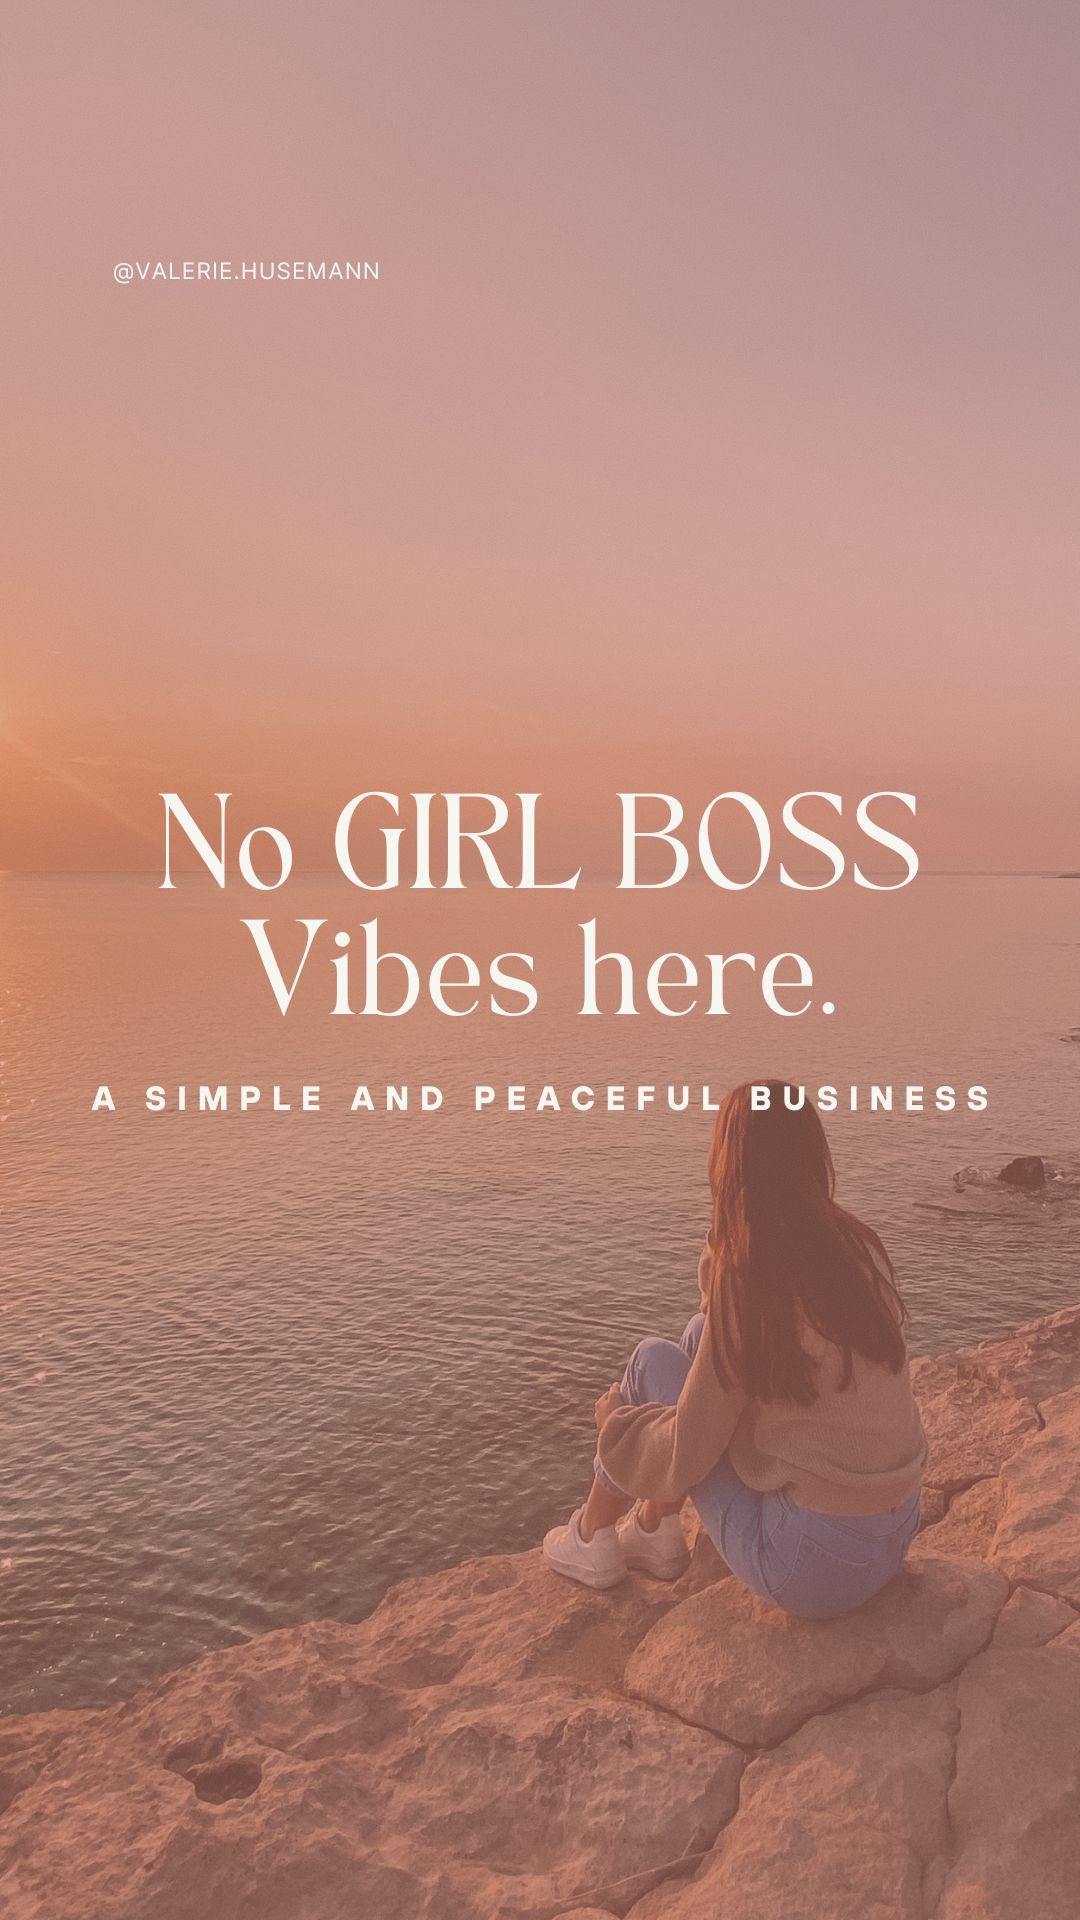 Nur weil das Bild von Girl-Boss-und-Hustle-Modus hier auf Instagram mehr vertreten ist, bedeutet nicht dass es nur diesen Weg gibt. ✨

Ich habe mich lange selbst dafür verurteilt, nicht diesen Drang zu spüren ein Millionendollar Jahresumsätze Business aufzubauen oder davon zu träumen ein 12 köpfiges Team zu haben und dem größten Erfolg hinterherzutragen. Nicht dass daran irgendwas falsch ist, but it’s just not for me.. 

Ich bin so dankbar ein simples (introvert-freundliches) Business aufgebaut zu haben, dass es mir erlaubt ..

➡️Mir eine Auszeit zu nehmen und nicht ständig online sein zu müssen

➡️Zu leben wo ich es möchte, wann ich es möchte und mir unglaublich viel Freiheit schenkt

➡️Mir ermöglicht wundervolle like-minded Frauen als Soul Clients anzuziehen

➡️Mir die finanzielle Freiheit schenkt mein Lifestyle so zu gestalten, wie es zu mir und meiner Energie passt

➡️Mein Nervensystem runterzufahren und in Einklang mit meinen Werten zu sein ✨

.. und der schönste Moment für mich in meinem Business ist, wenn meine Soul Clients das realisieren, loslassen und Schritt für Schritt Soul Clients anziehen, ihre Jobs kündigen können, mehr Zeit mit ihren Liebsten haben und erfüllt von ihrer Arbeit sind.🥹

Und das wünsche ich mir für jede von uns. ❤️

Bis zum 15. Dezember gibt es daher das aller größte Special, dass es jemals bei mir gab. Achtung: das ist KEIN Black Friday Angebot.🤓

.. ich möchte nicht, dass du aus Impuls kaufst. Wenn du dich anmeldest, wünsche ich mir, dass es aus deinem Herzen kommt, aus dem Vertrauen in dich und deinen Weg und mich als deine Mentorin. ☺️💗

Mehr dazu unter dem Link in meinem Profil. ✨ 

Happy weekend, ihr Lieben! 🫶🏼

Xx, Valerie 

#Werdesichtbar #Soulbusiness
#businesswachstum #expertenbusiness #contentmarketingtipps #businessaufbau
#herzenbusiness #businessstrategie#socialmediatipps #introvertierteunternehmer #emotionalesmarketing #intuitivesmarketing